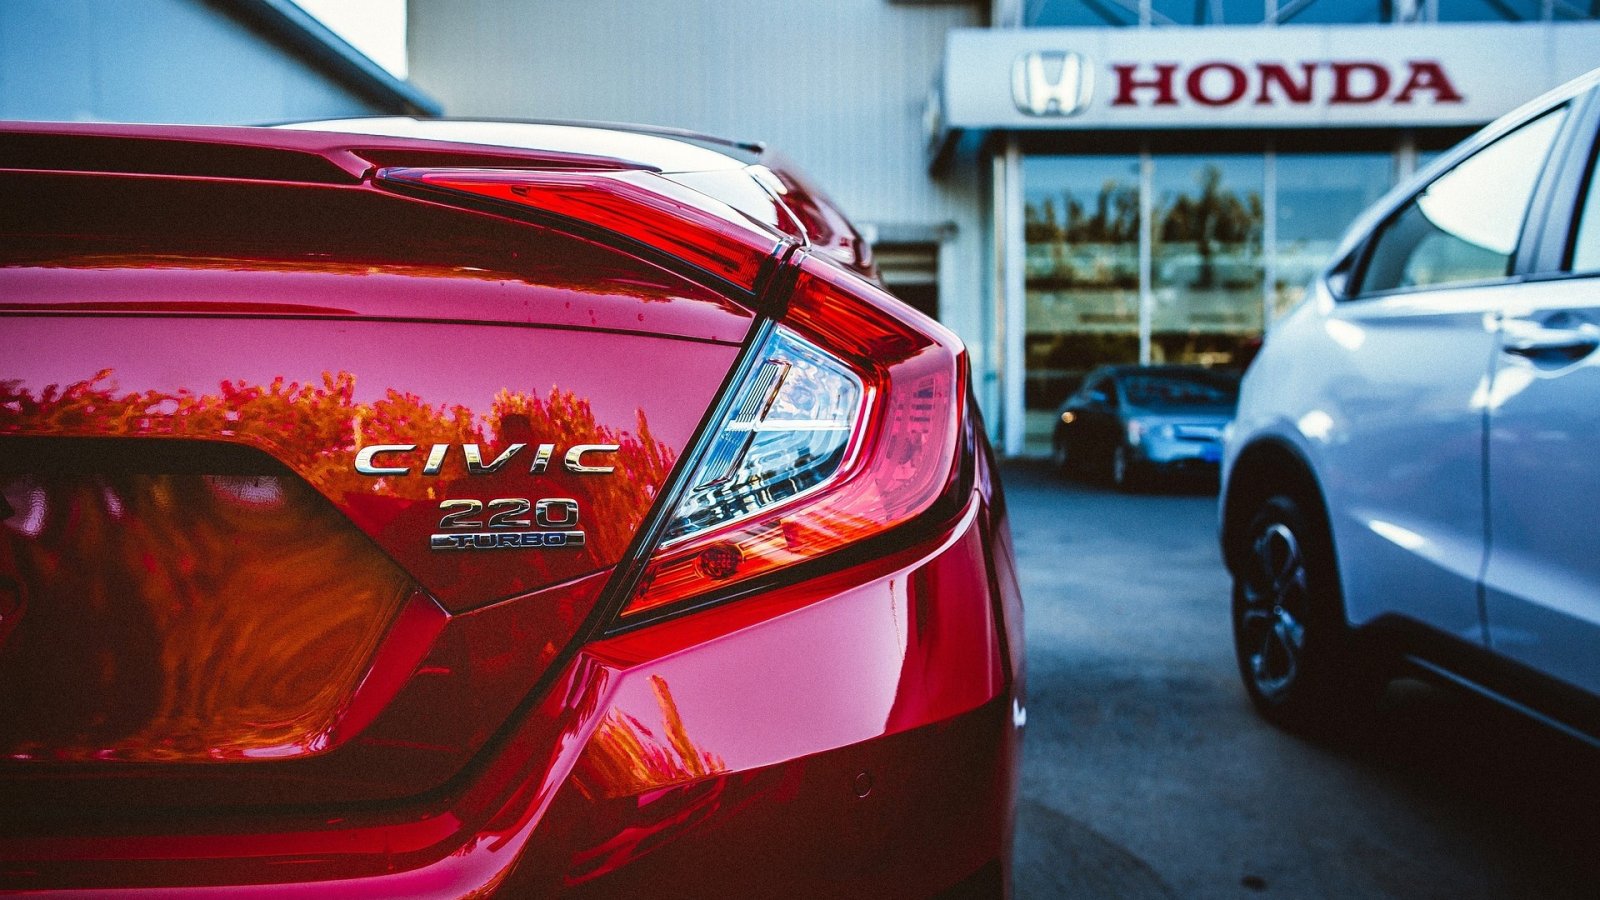 Honda และ GM ร่วมทุนผลิตเซลล์เชื้อเพลิงไฮโดรเจนสำรับรถยนต์และผลิตภัณฑ์อื่น ๆ